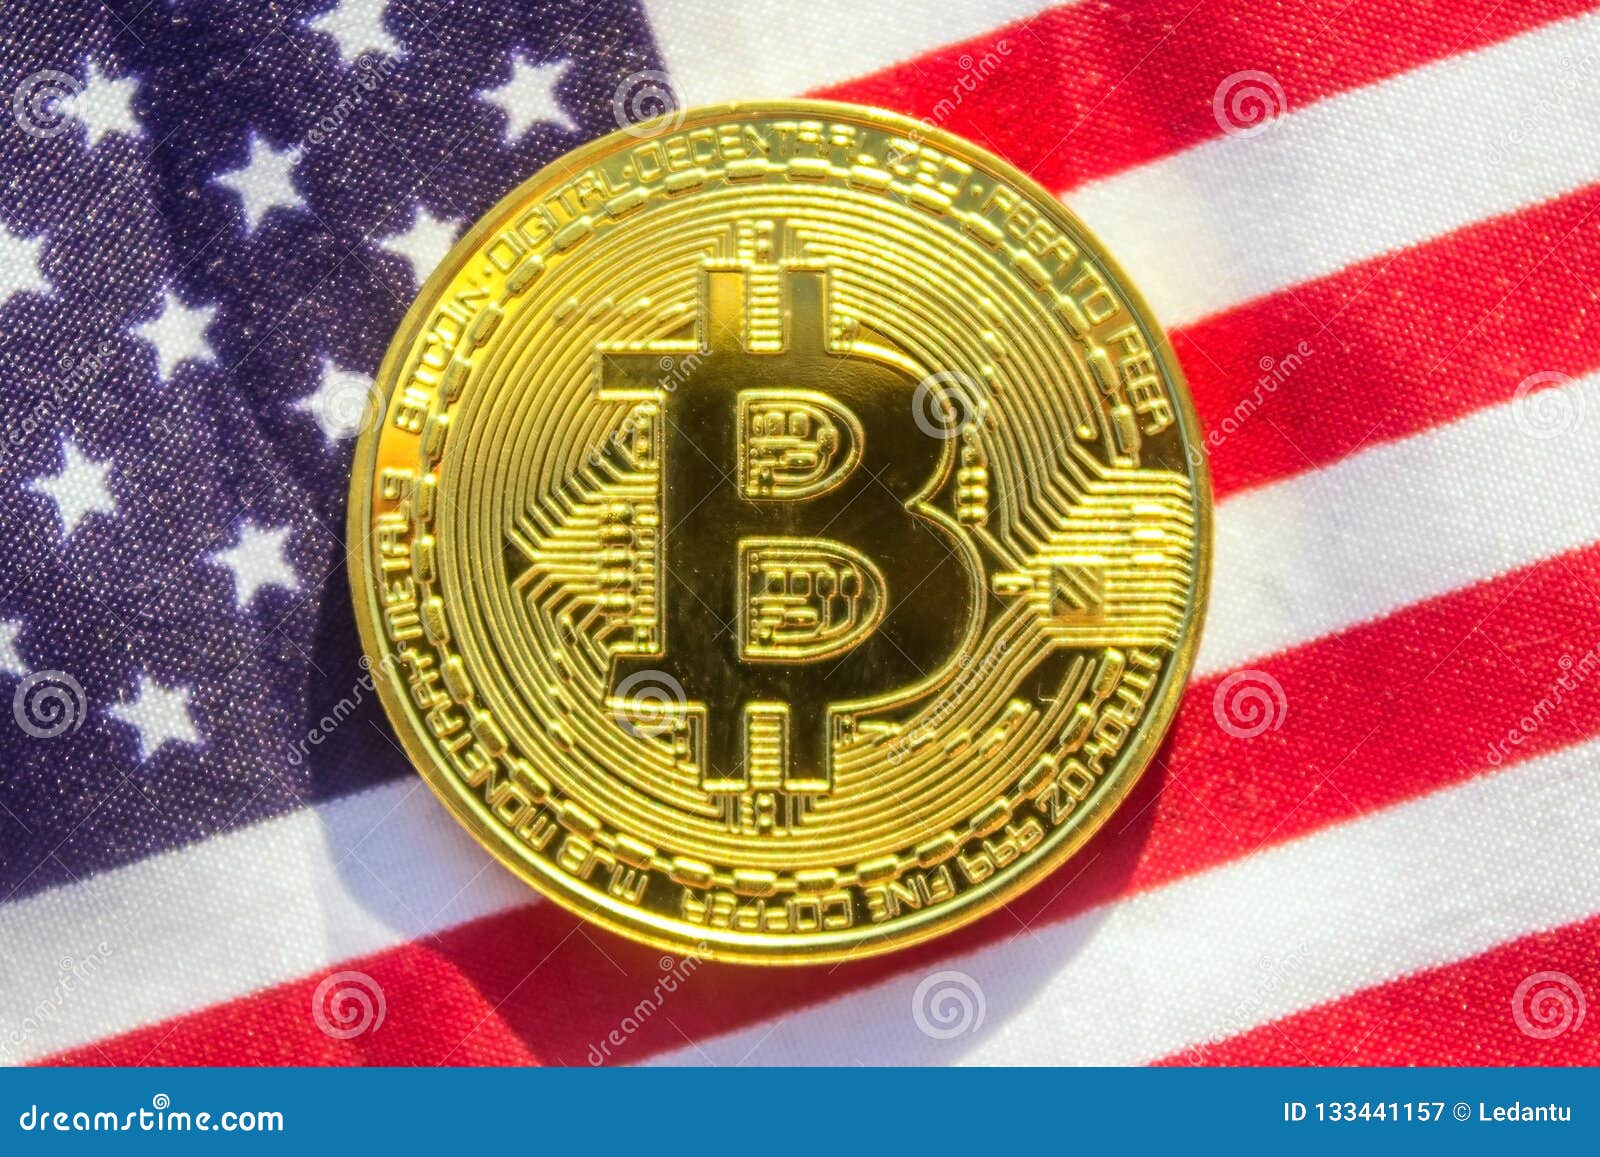 USA: Bitcoin sequestrati e rivenduti per 19 milioni di dollari